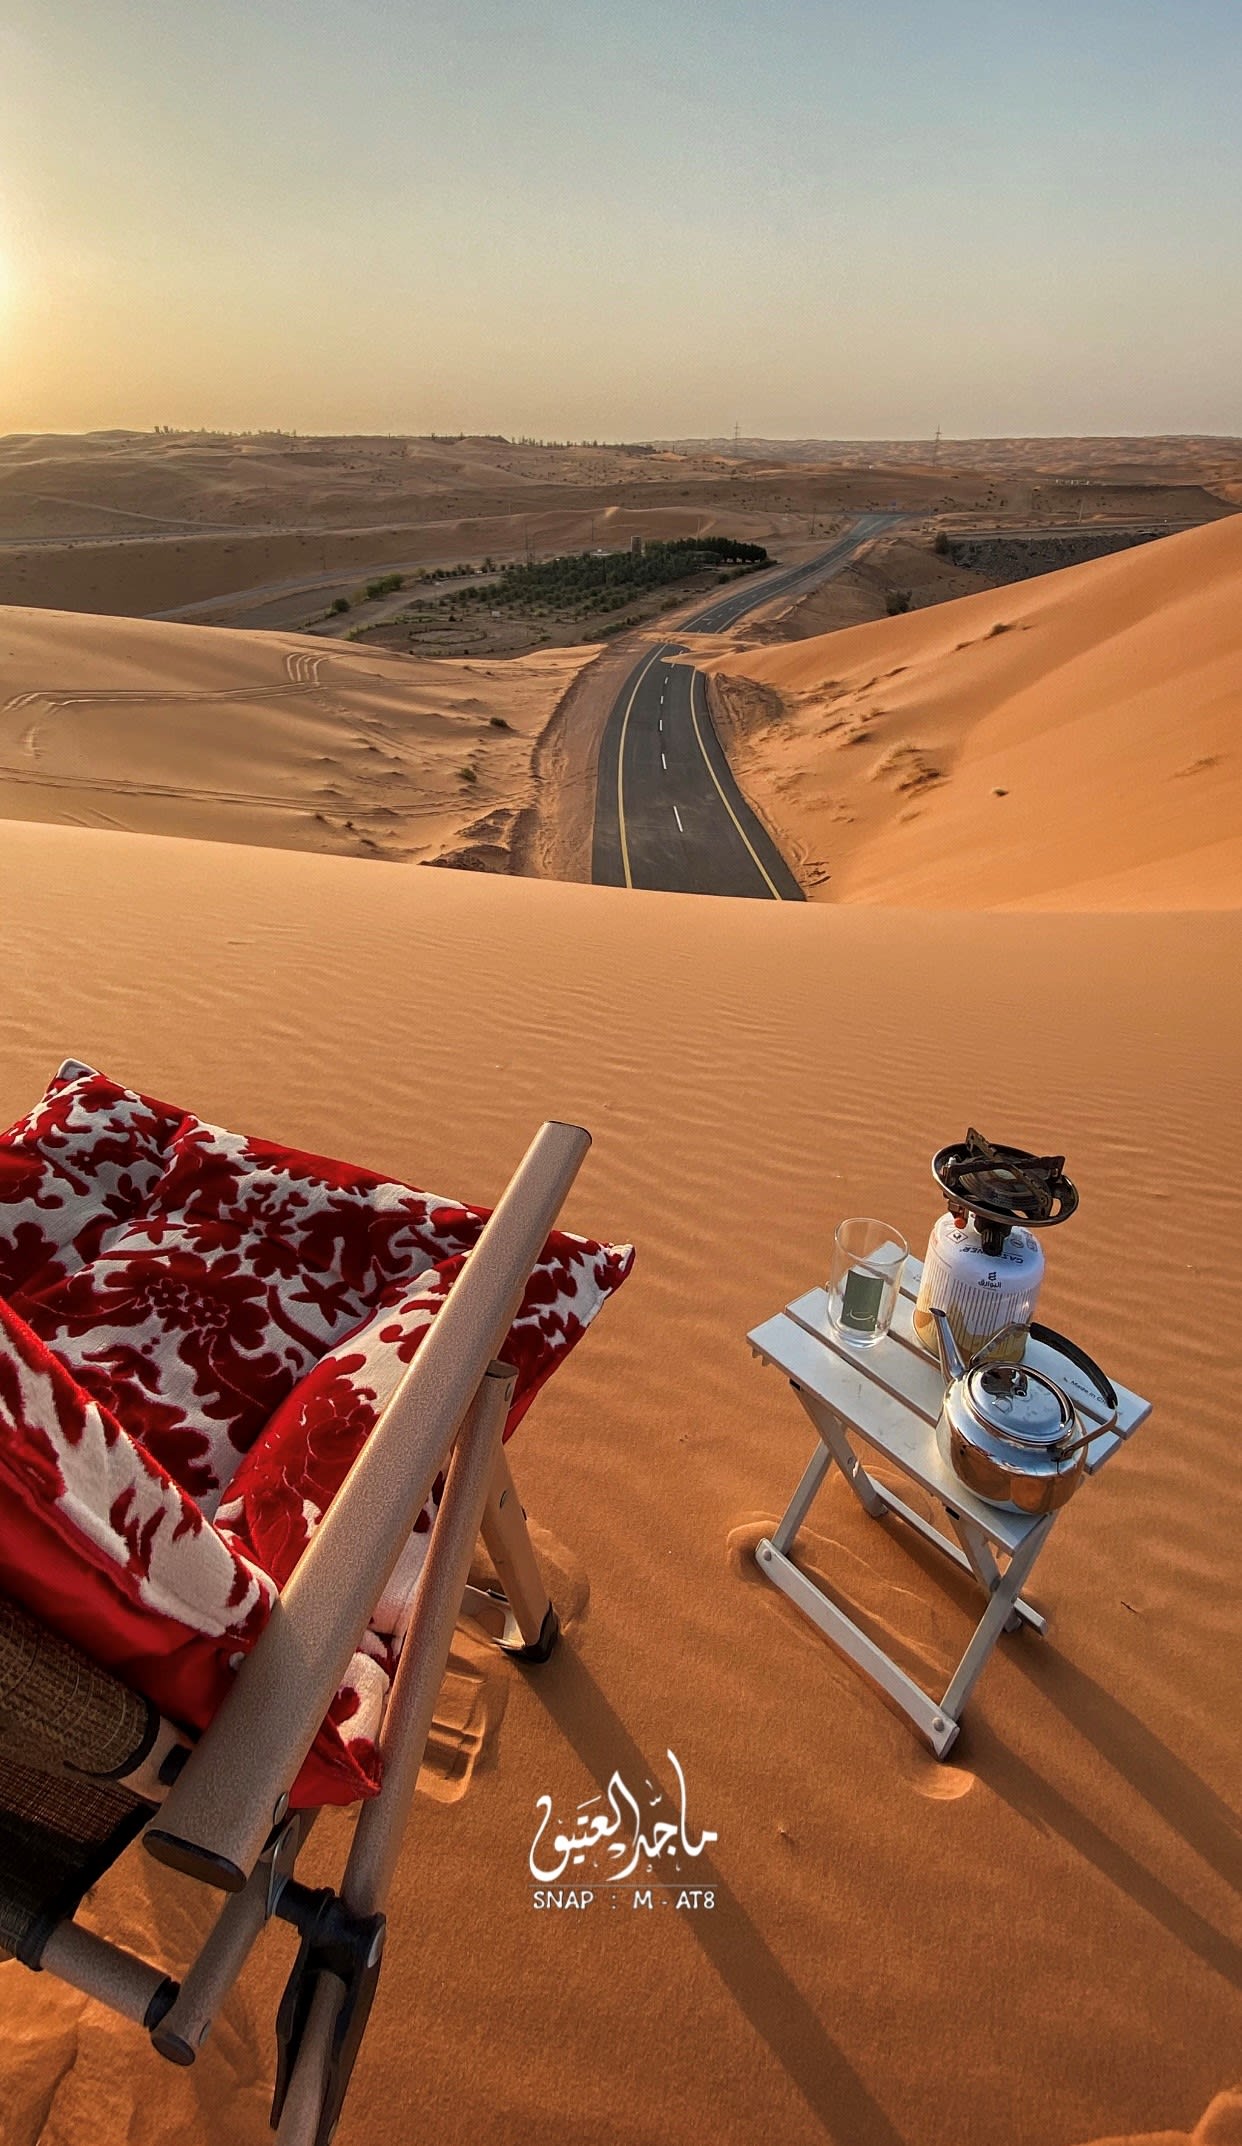 In Saudi-Arabien dokumentiert ein Fotograf einen bezaubernden Spaziergang am Ende einer mit Sand bedeckten Straße